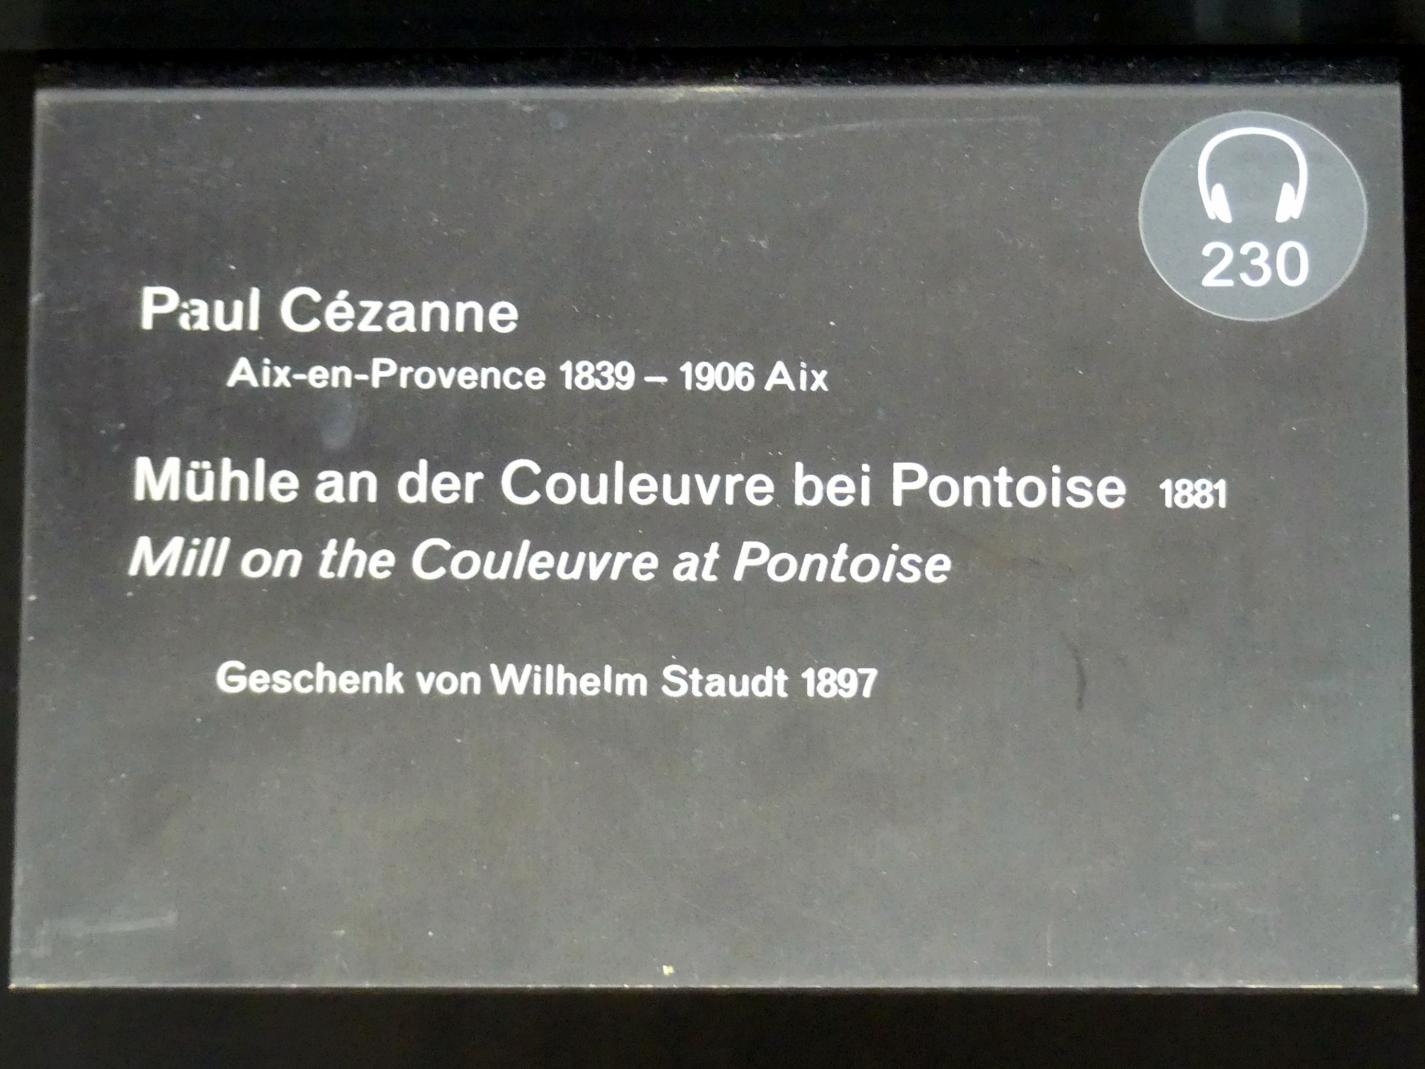 Paul Cézanne (1866–1906), Mühle an der Couleuvre bei Pontoise, Berlin, Alte Nationalgalerie, Saal 203, Französische Impressionisten, 1881, Bild 2/2